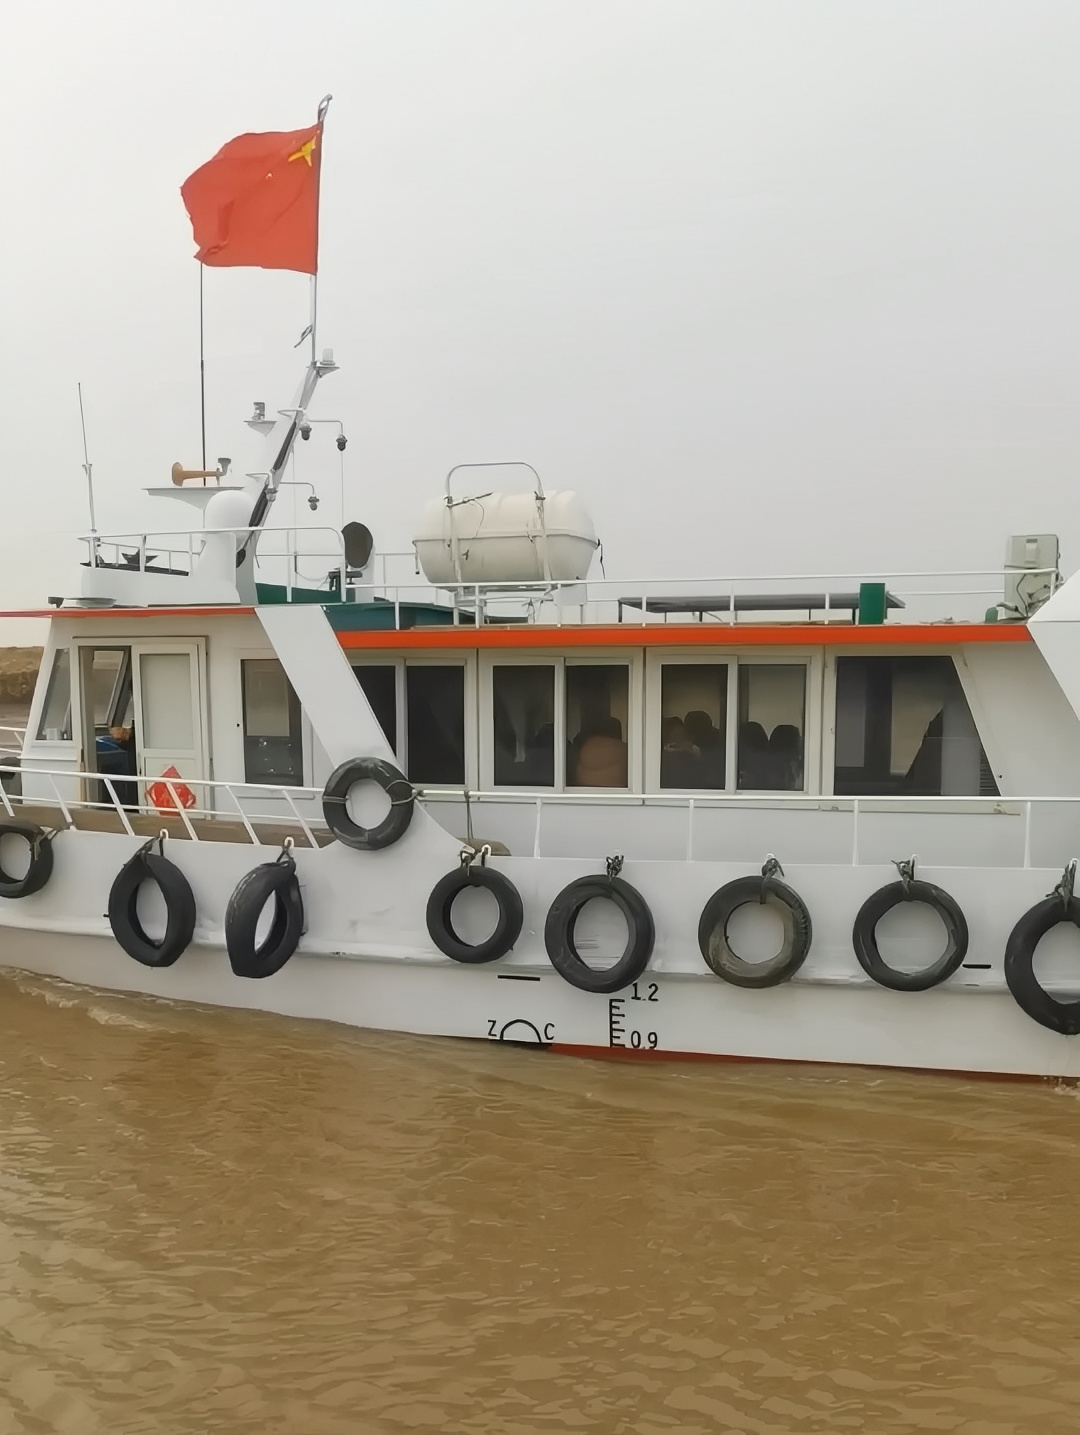 河北沧州黄骅港涛哥出海包船一日游仅1200，现场打捞海鲜免费